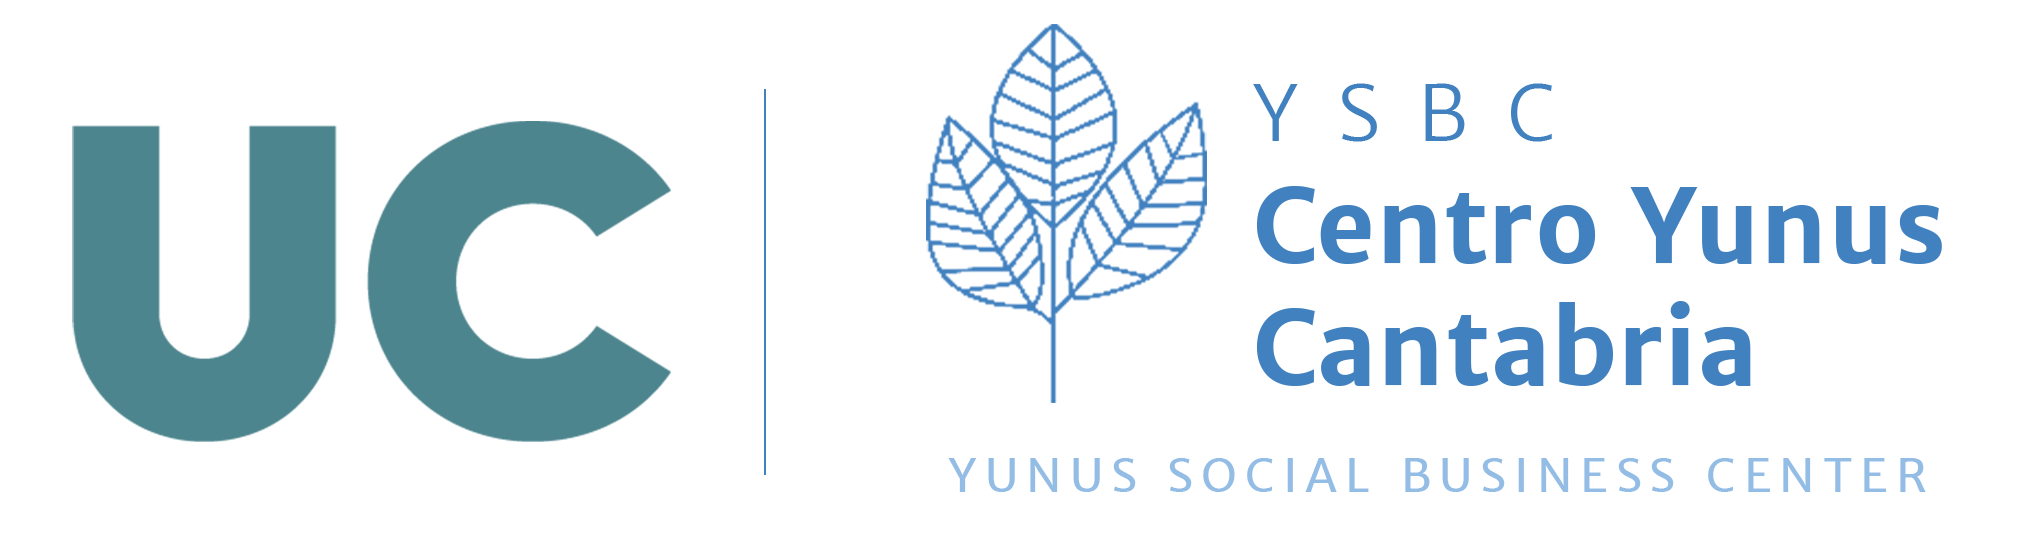 Centro Yunus